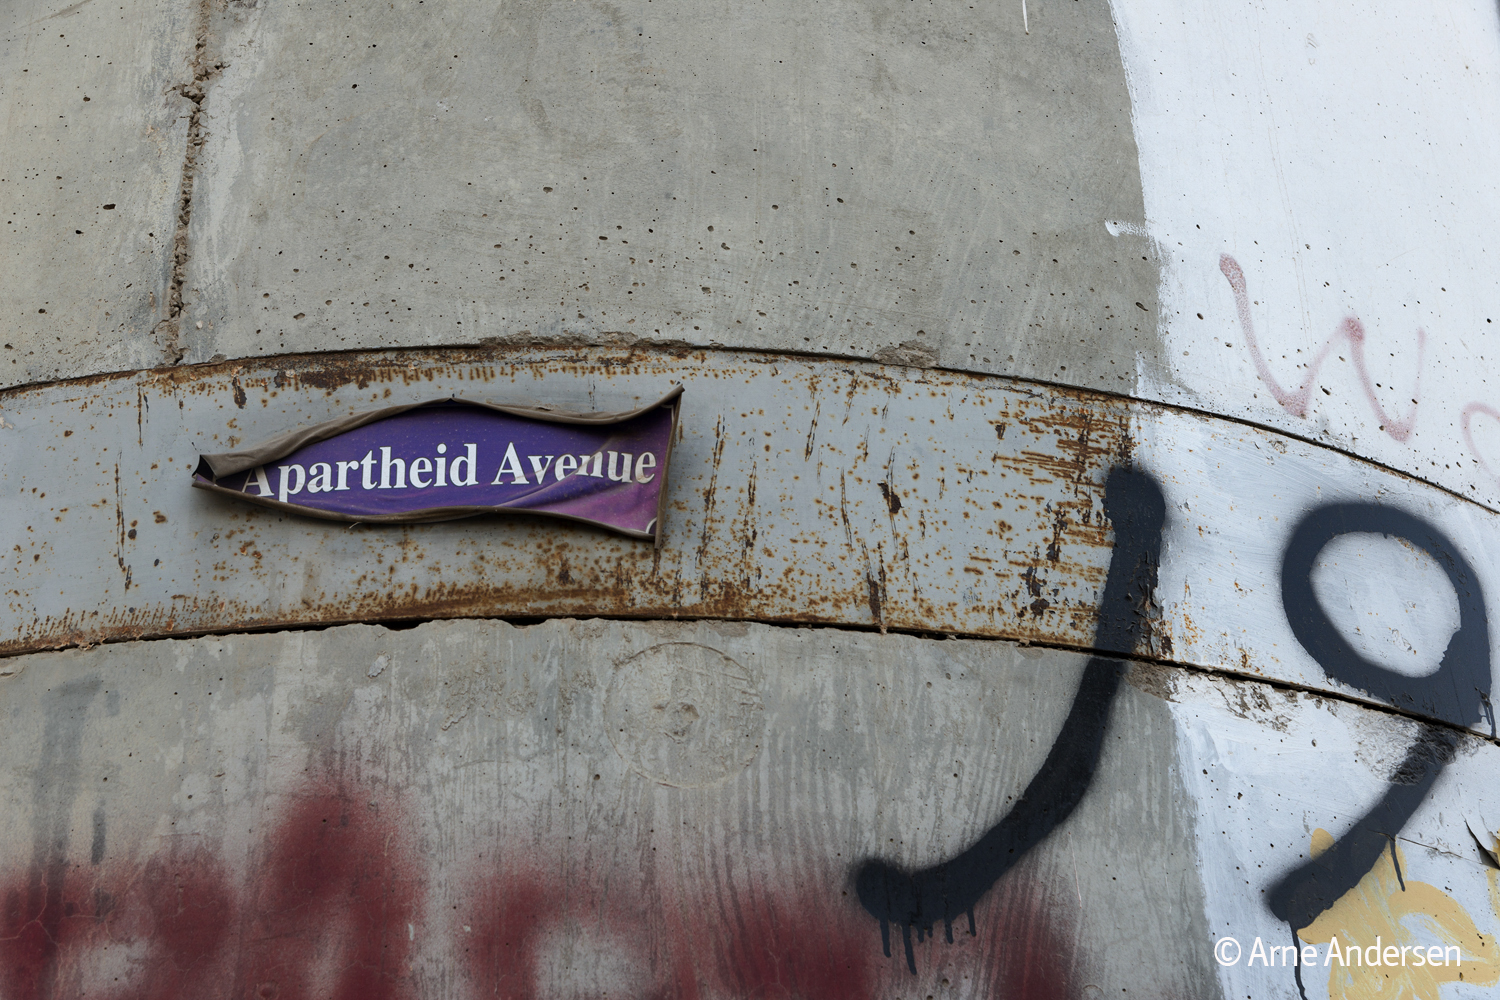 Apartheid Avenue